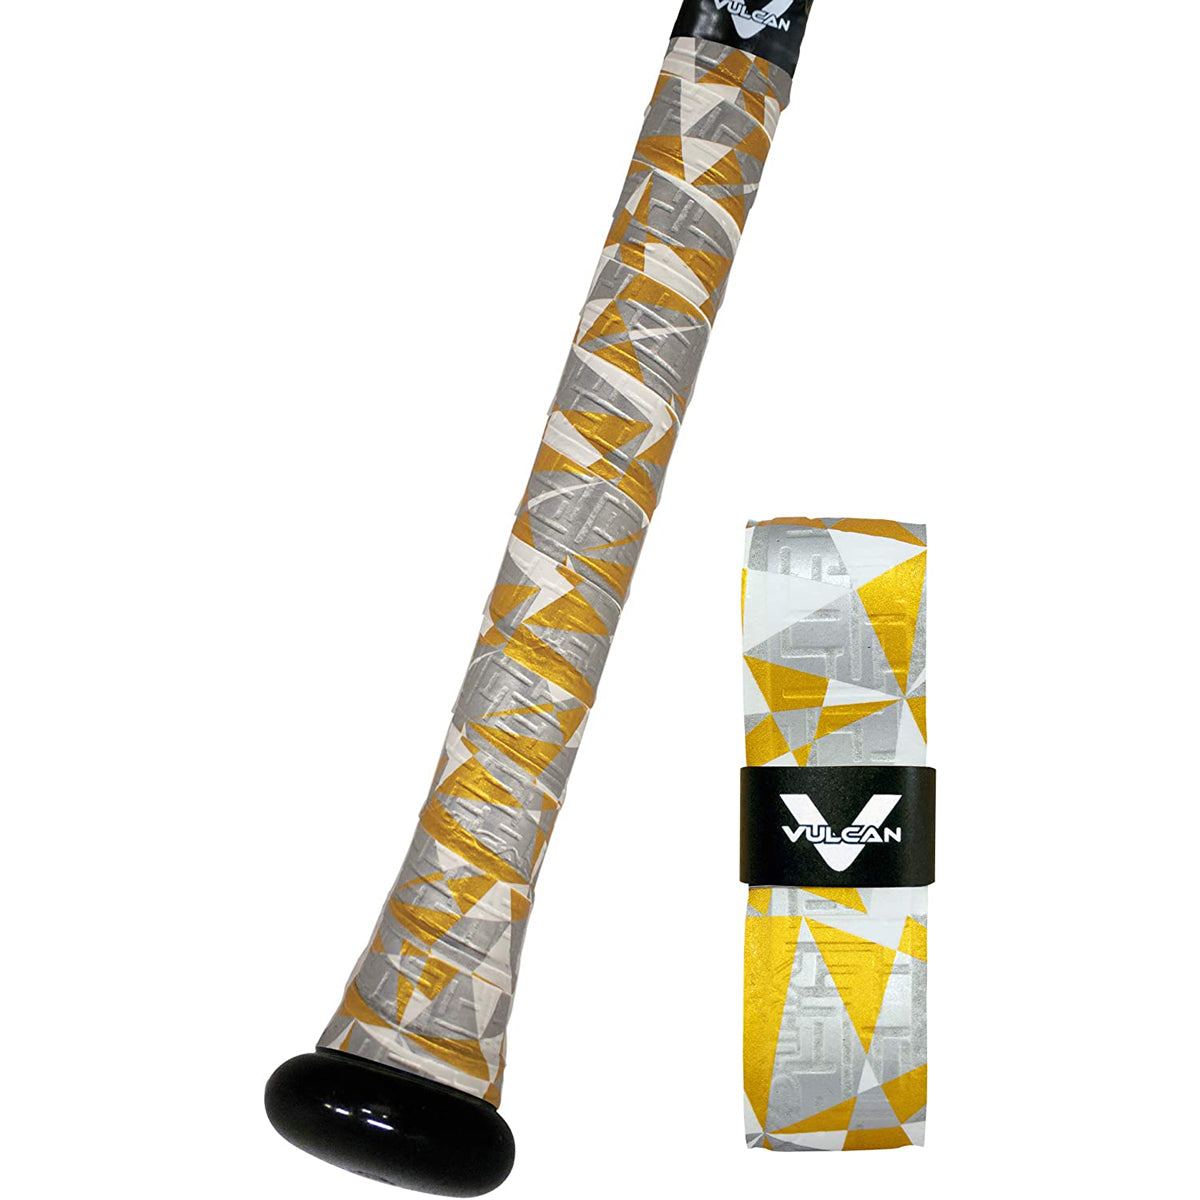 Vulcan Geo Series 1.75mm Ultralight Advanced Polymer Bat Grip Tape Wrap Vulcan